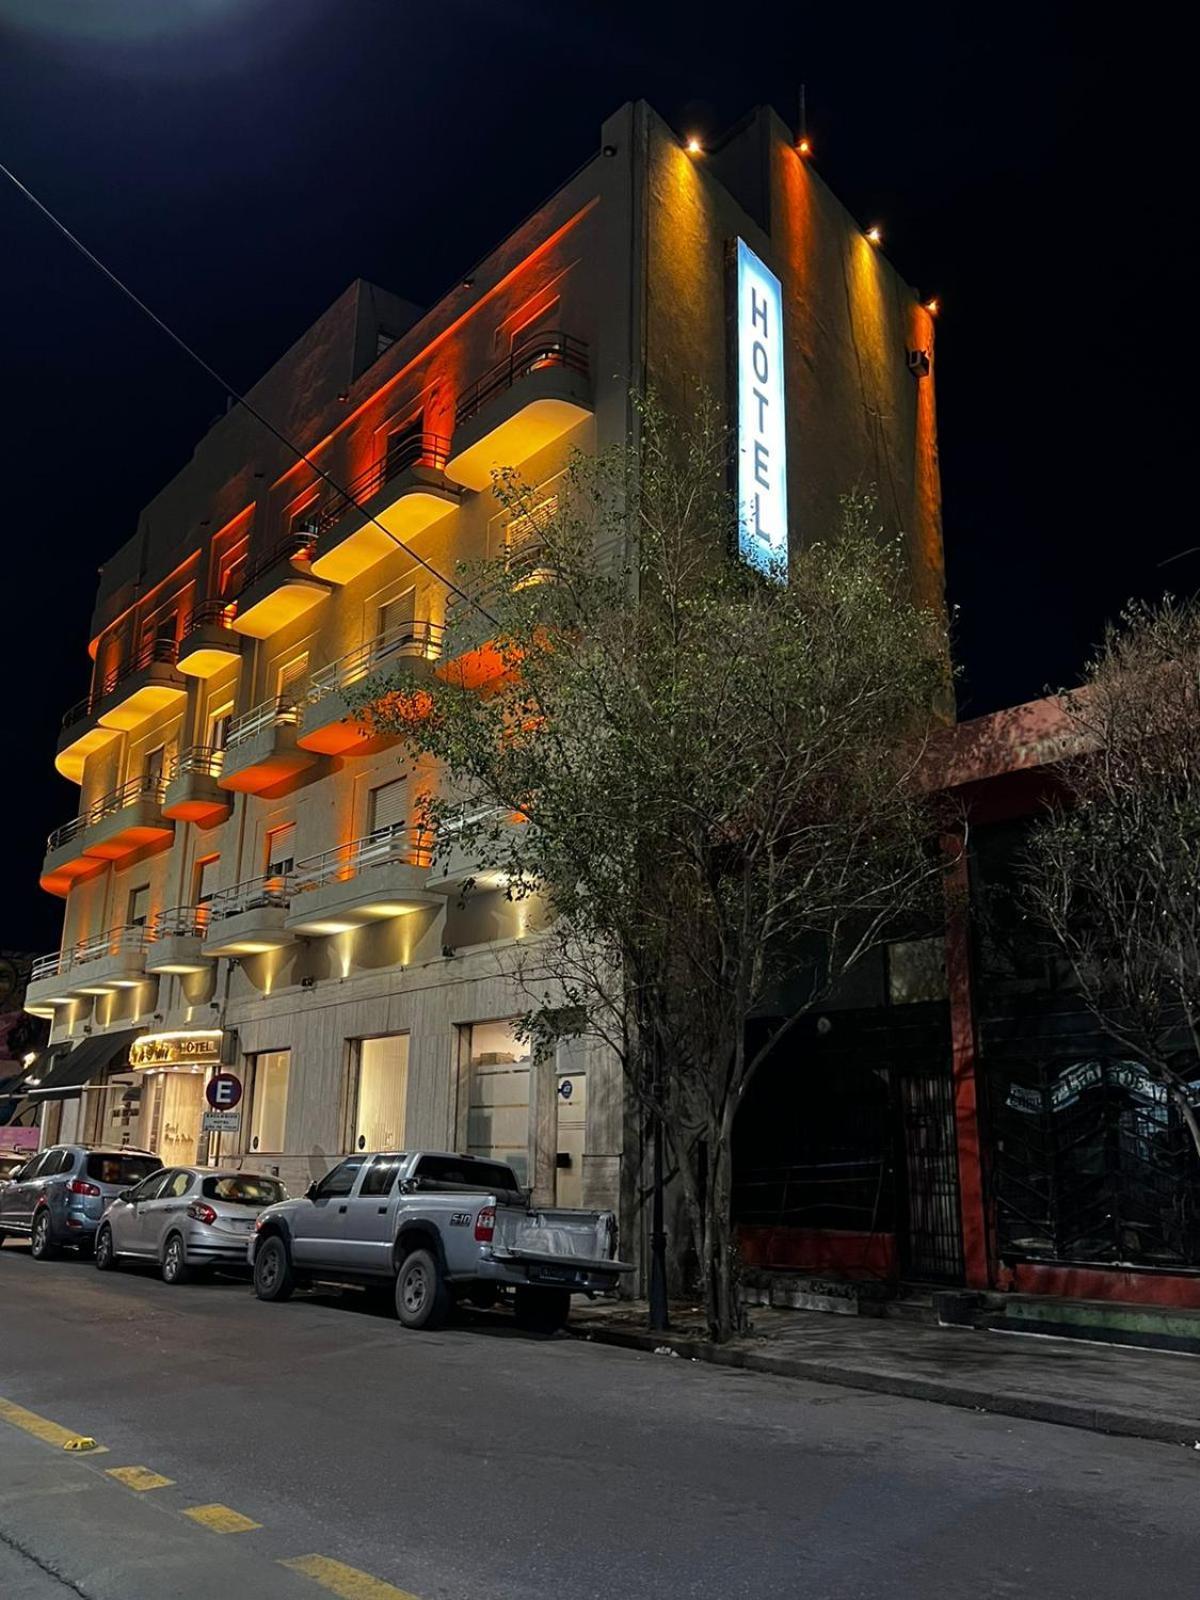 Hotel Vina De Italia Córdoba Exterior foto